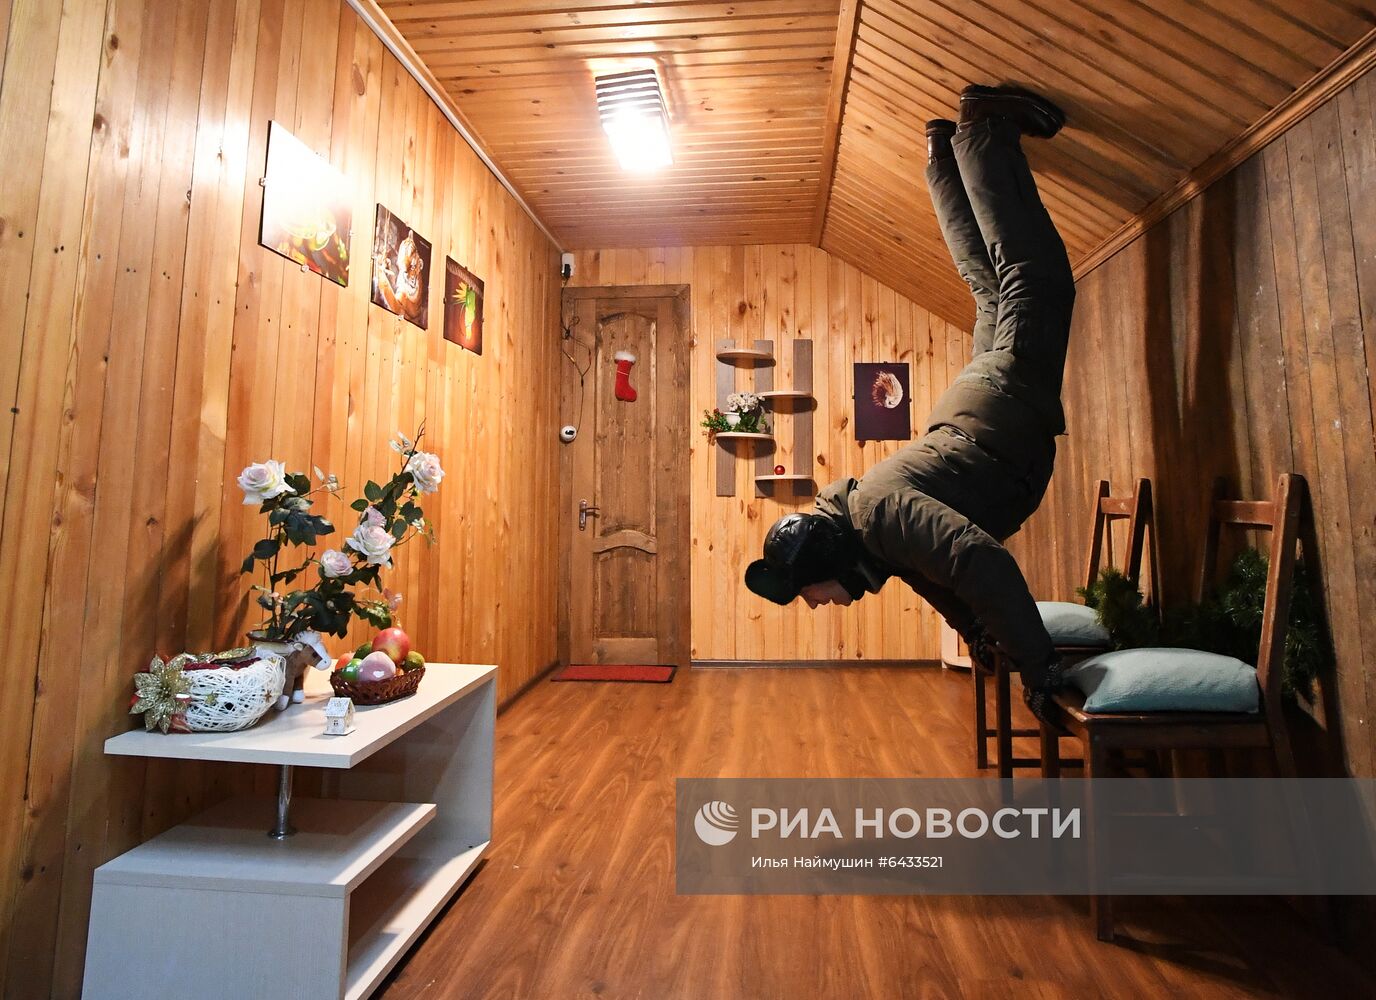 Аттракцион "Дом вверх дном" в Красноярске